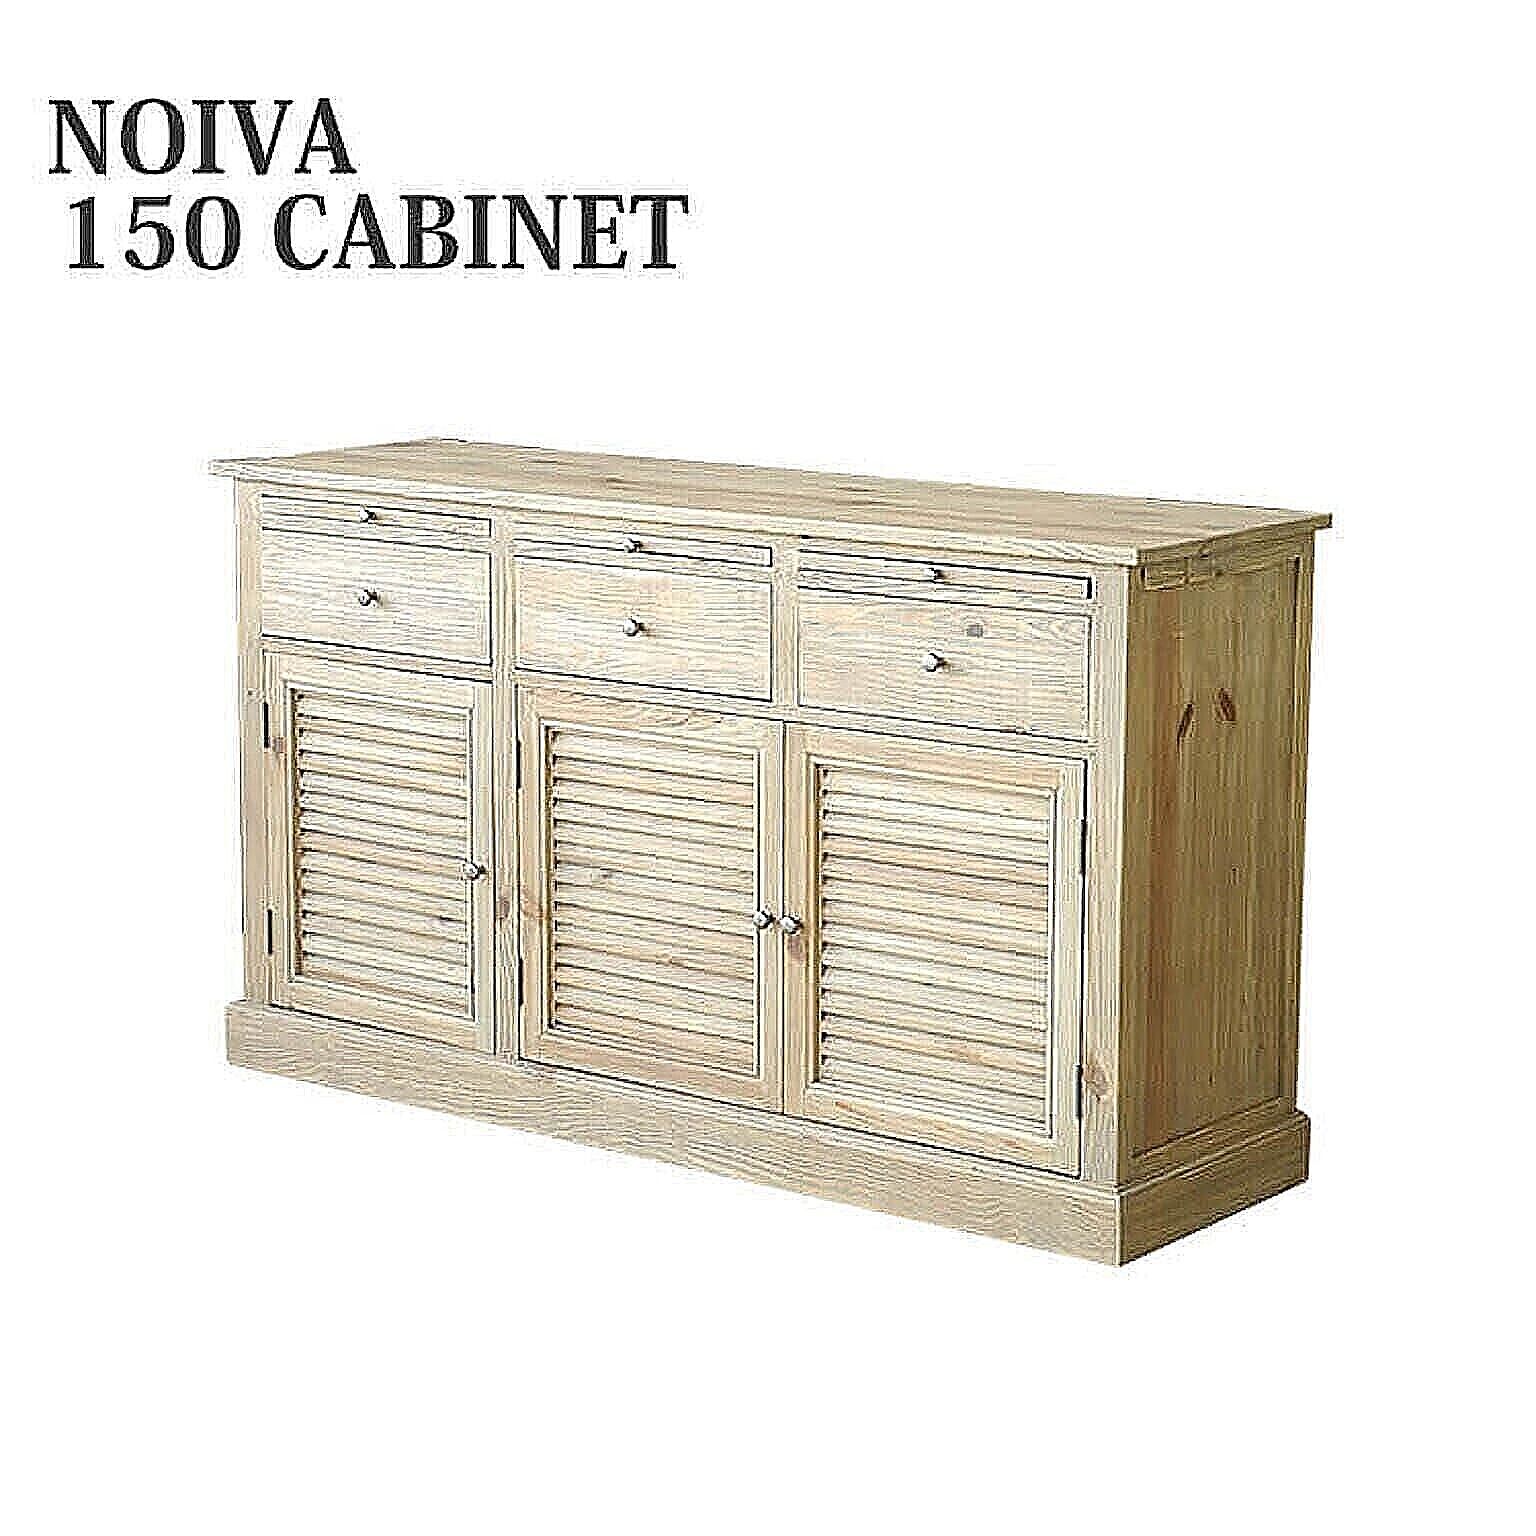 食器棚 ノイヴァ NOIVA 150 CABINET キッチンキャビネット キャビネット ラック 収納 シンプル モダン mosh ガルト 